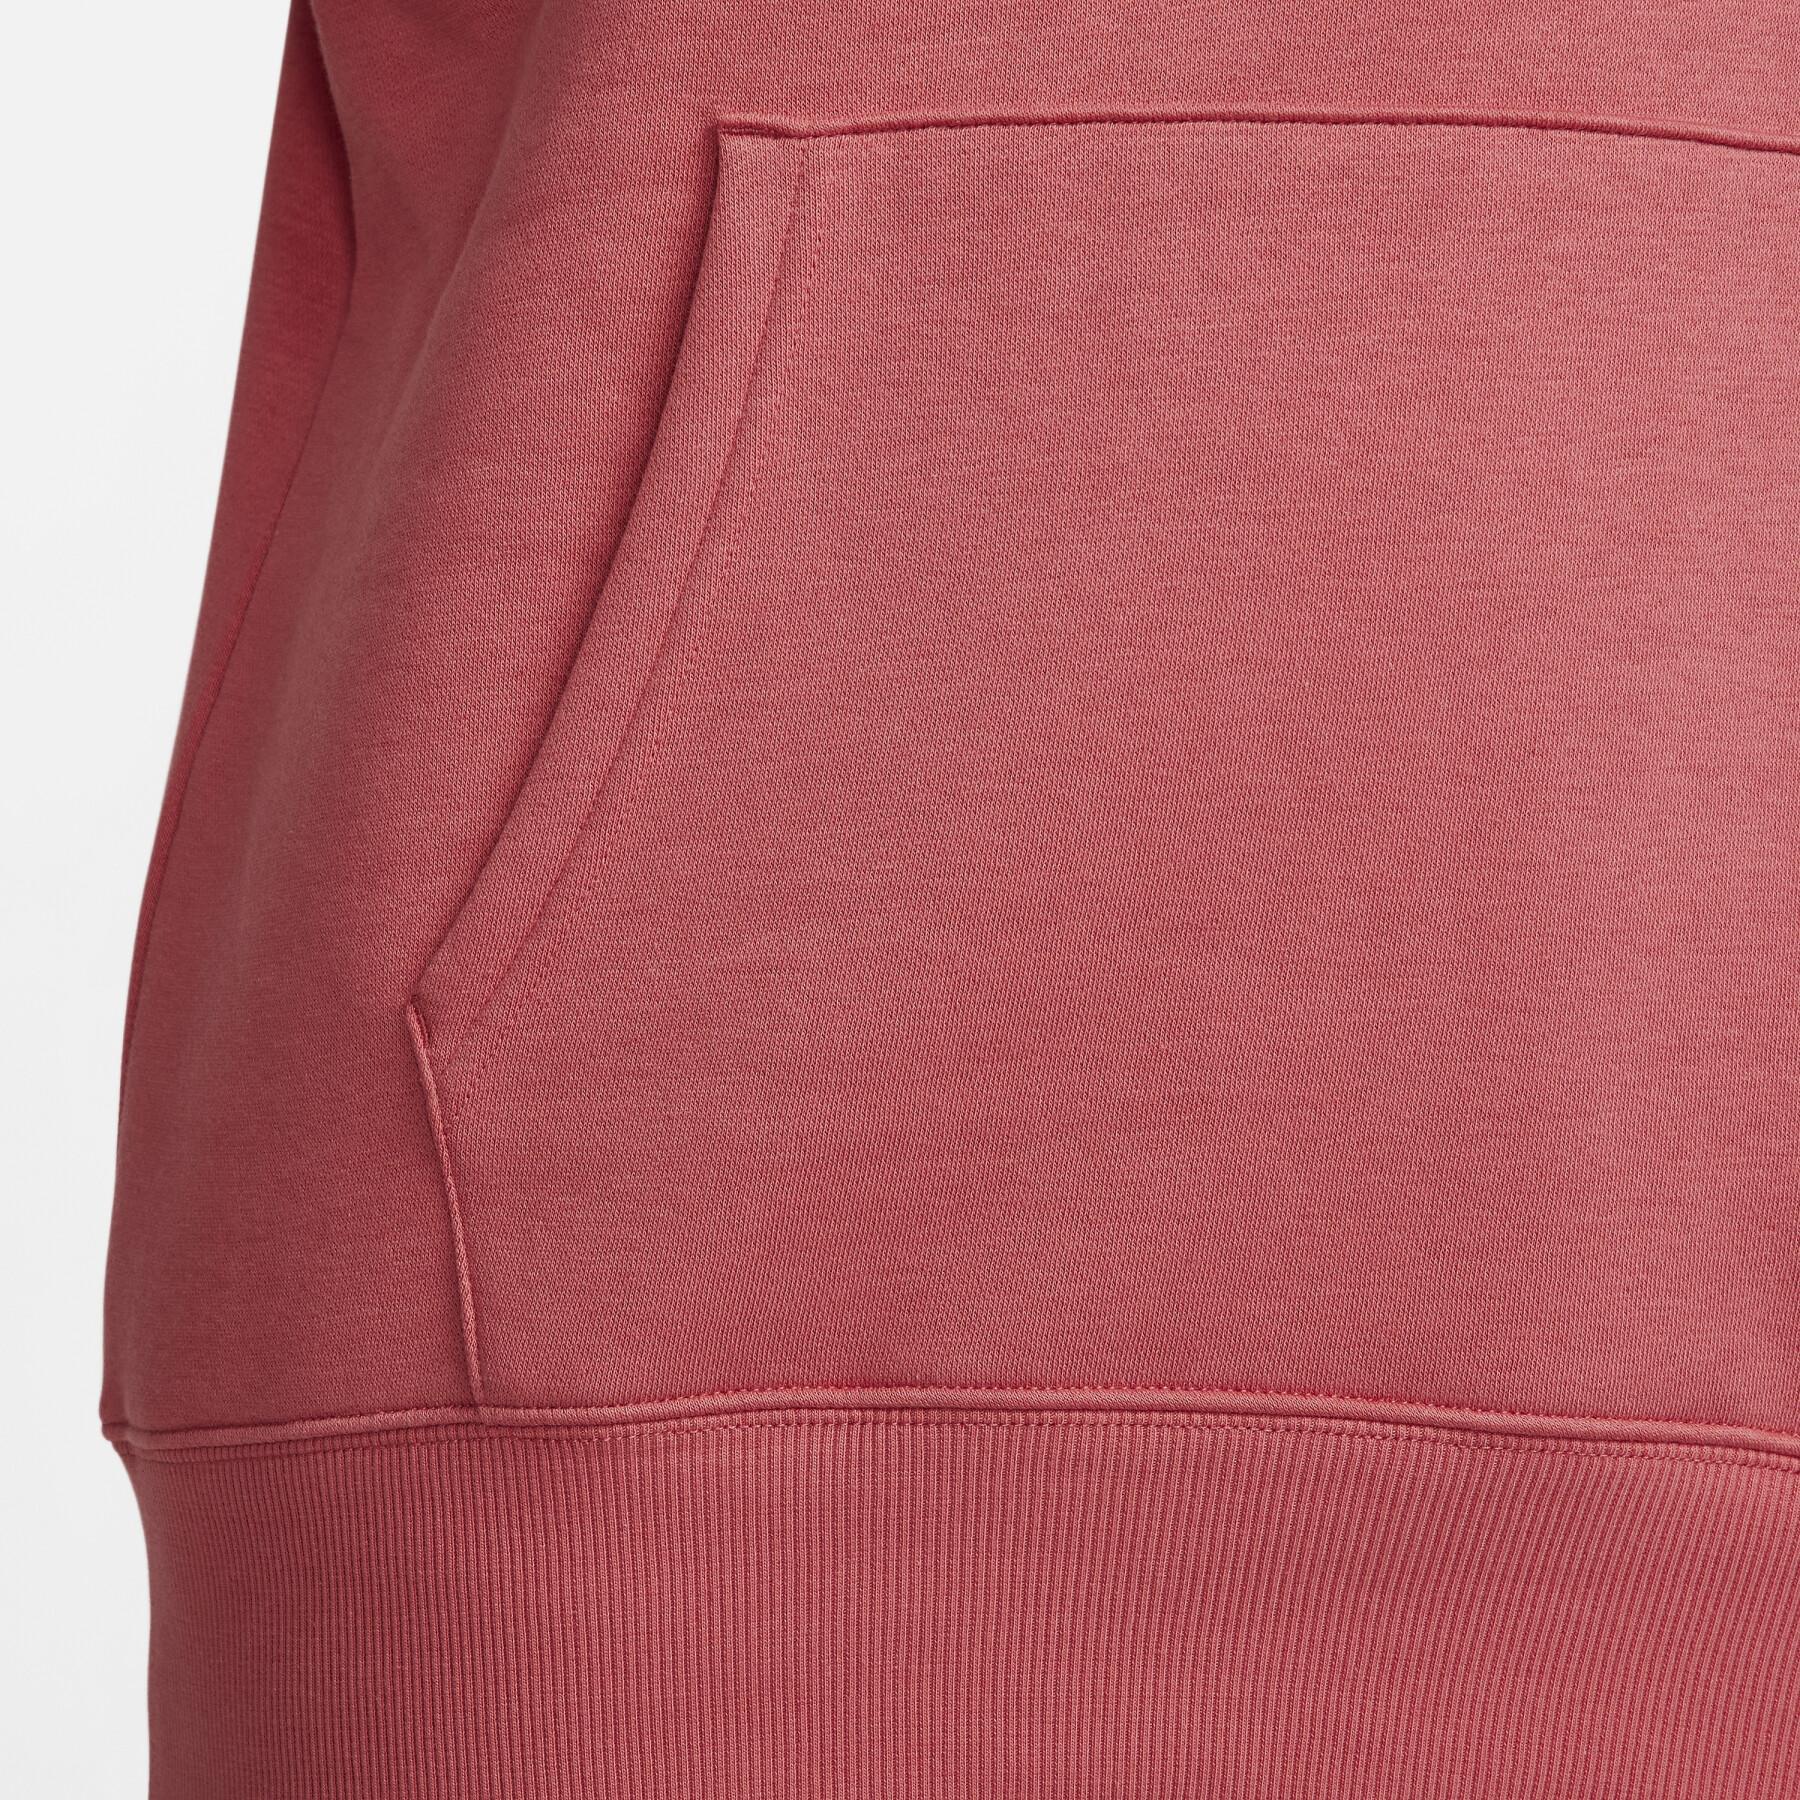 Sweatshirt femme Nike Fleece OS PO HDY MS